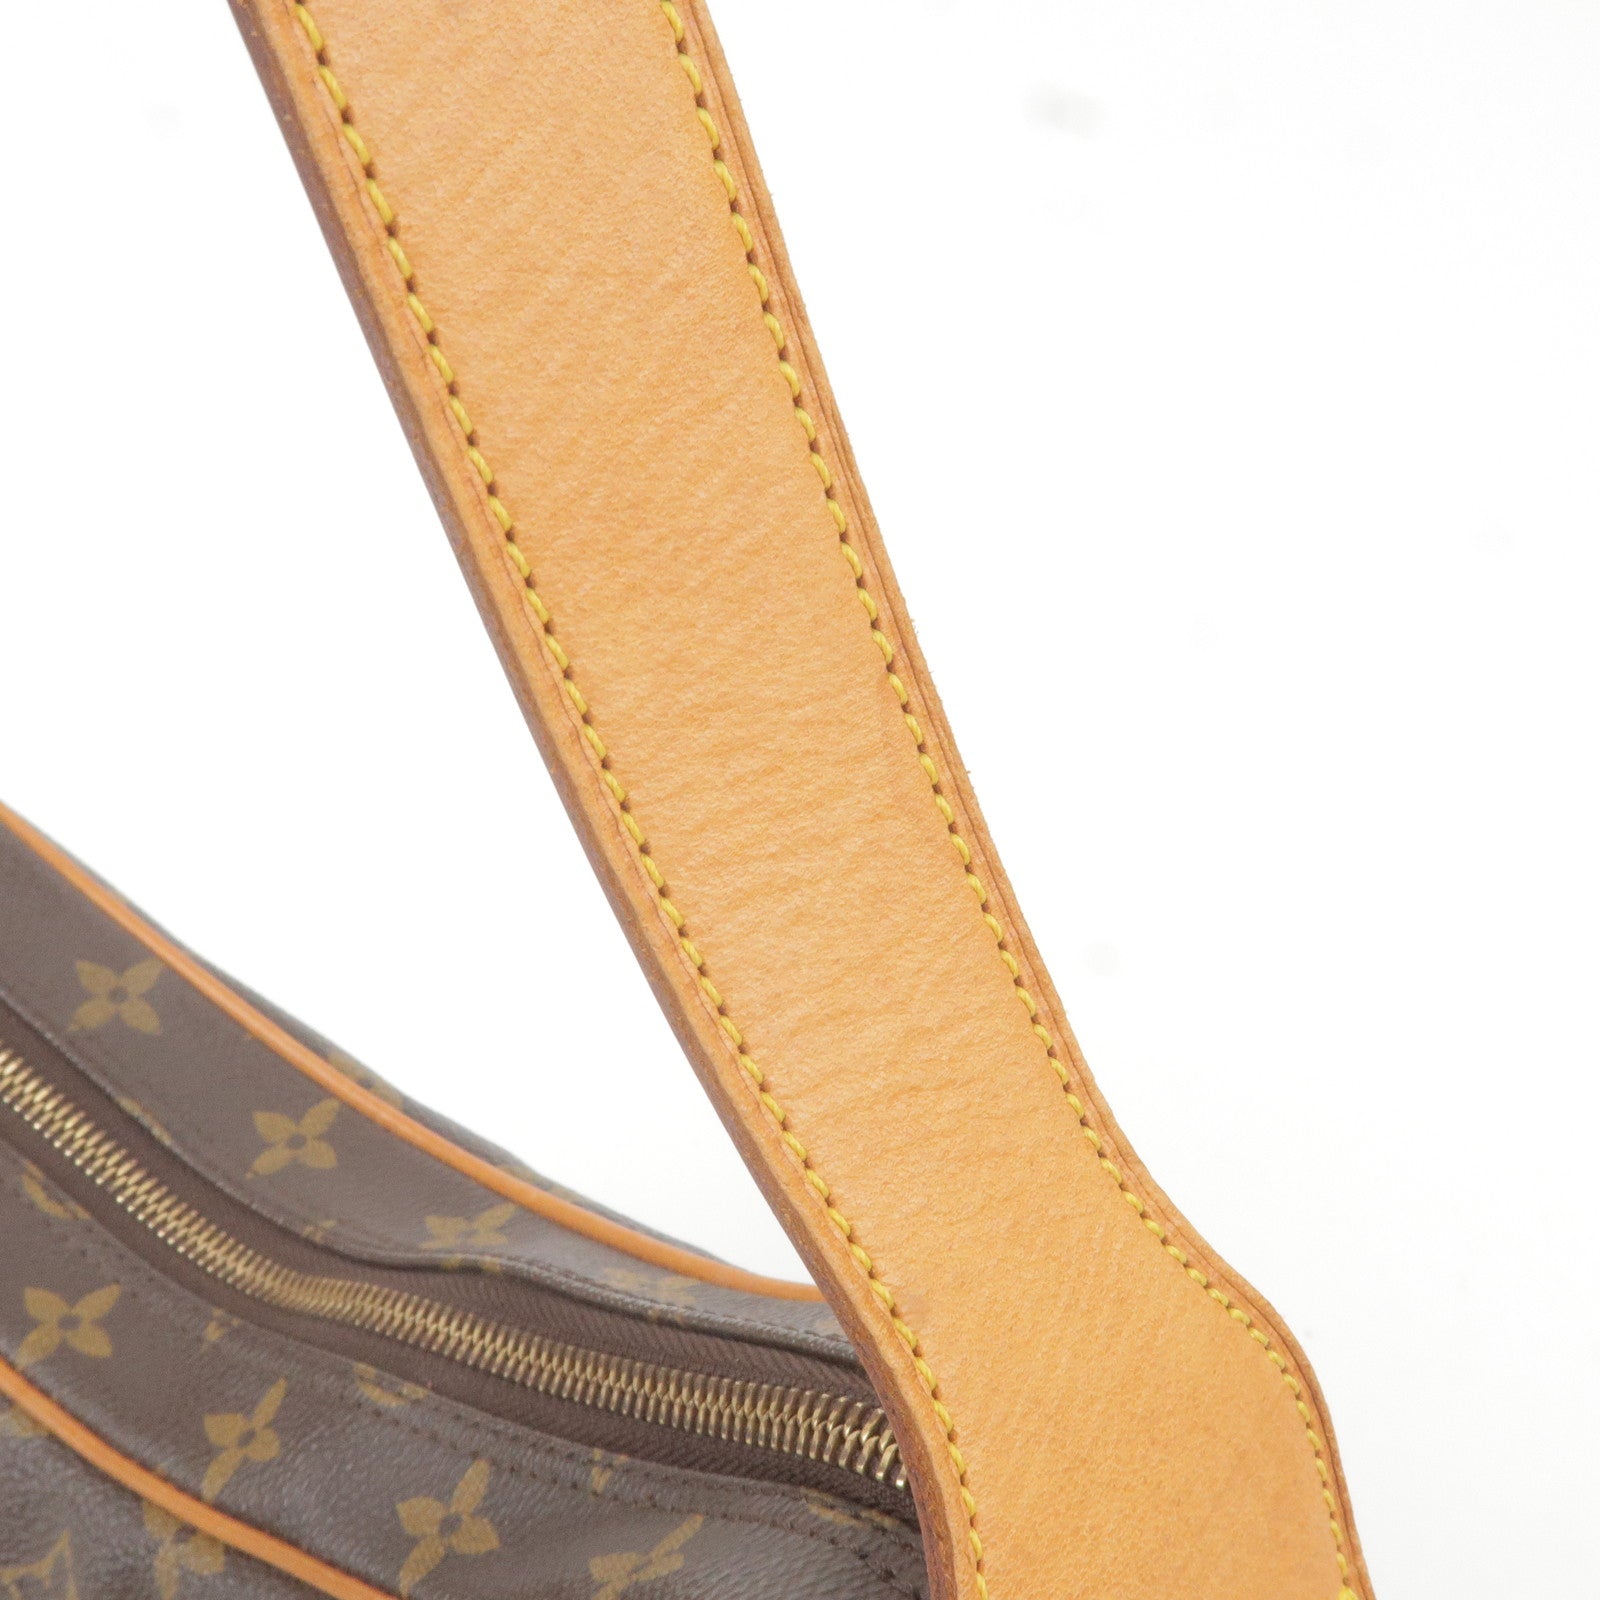 Louis Vuitton 2003 pre-owned Monogram Croissant MM Shoulder Bag